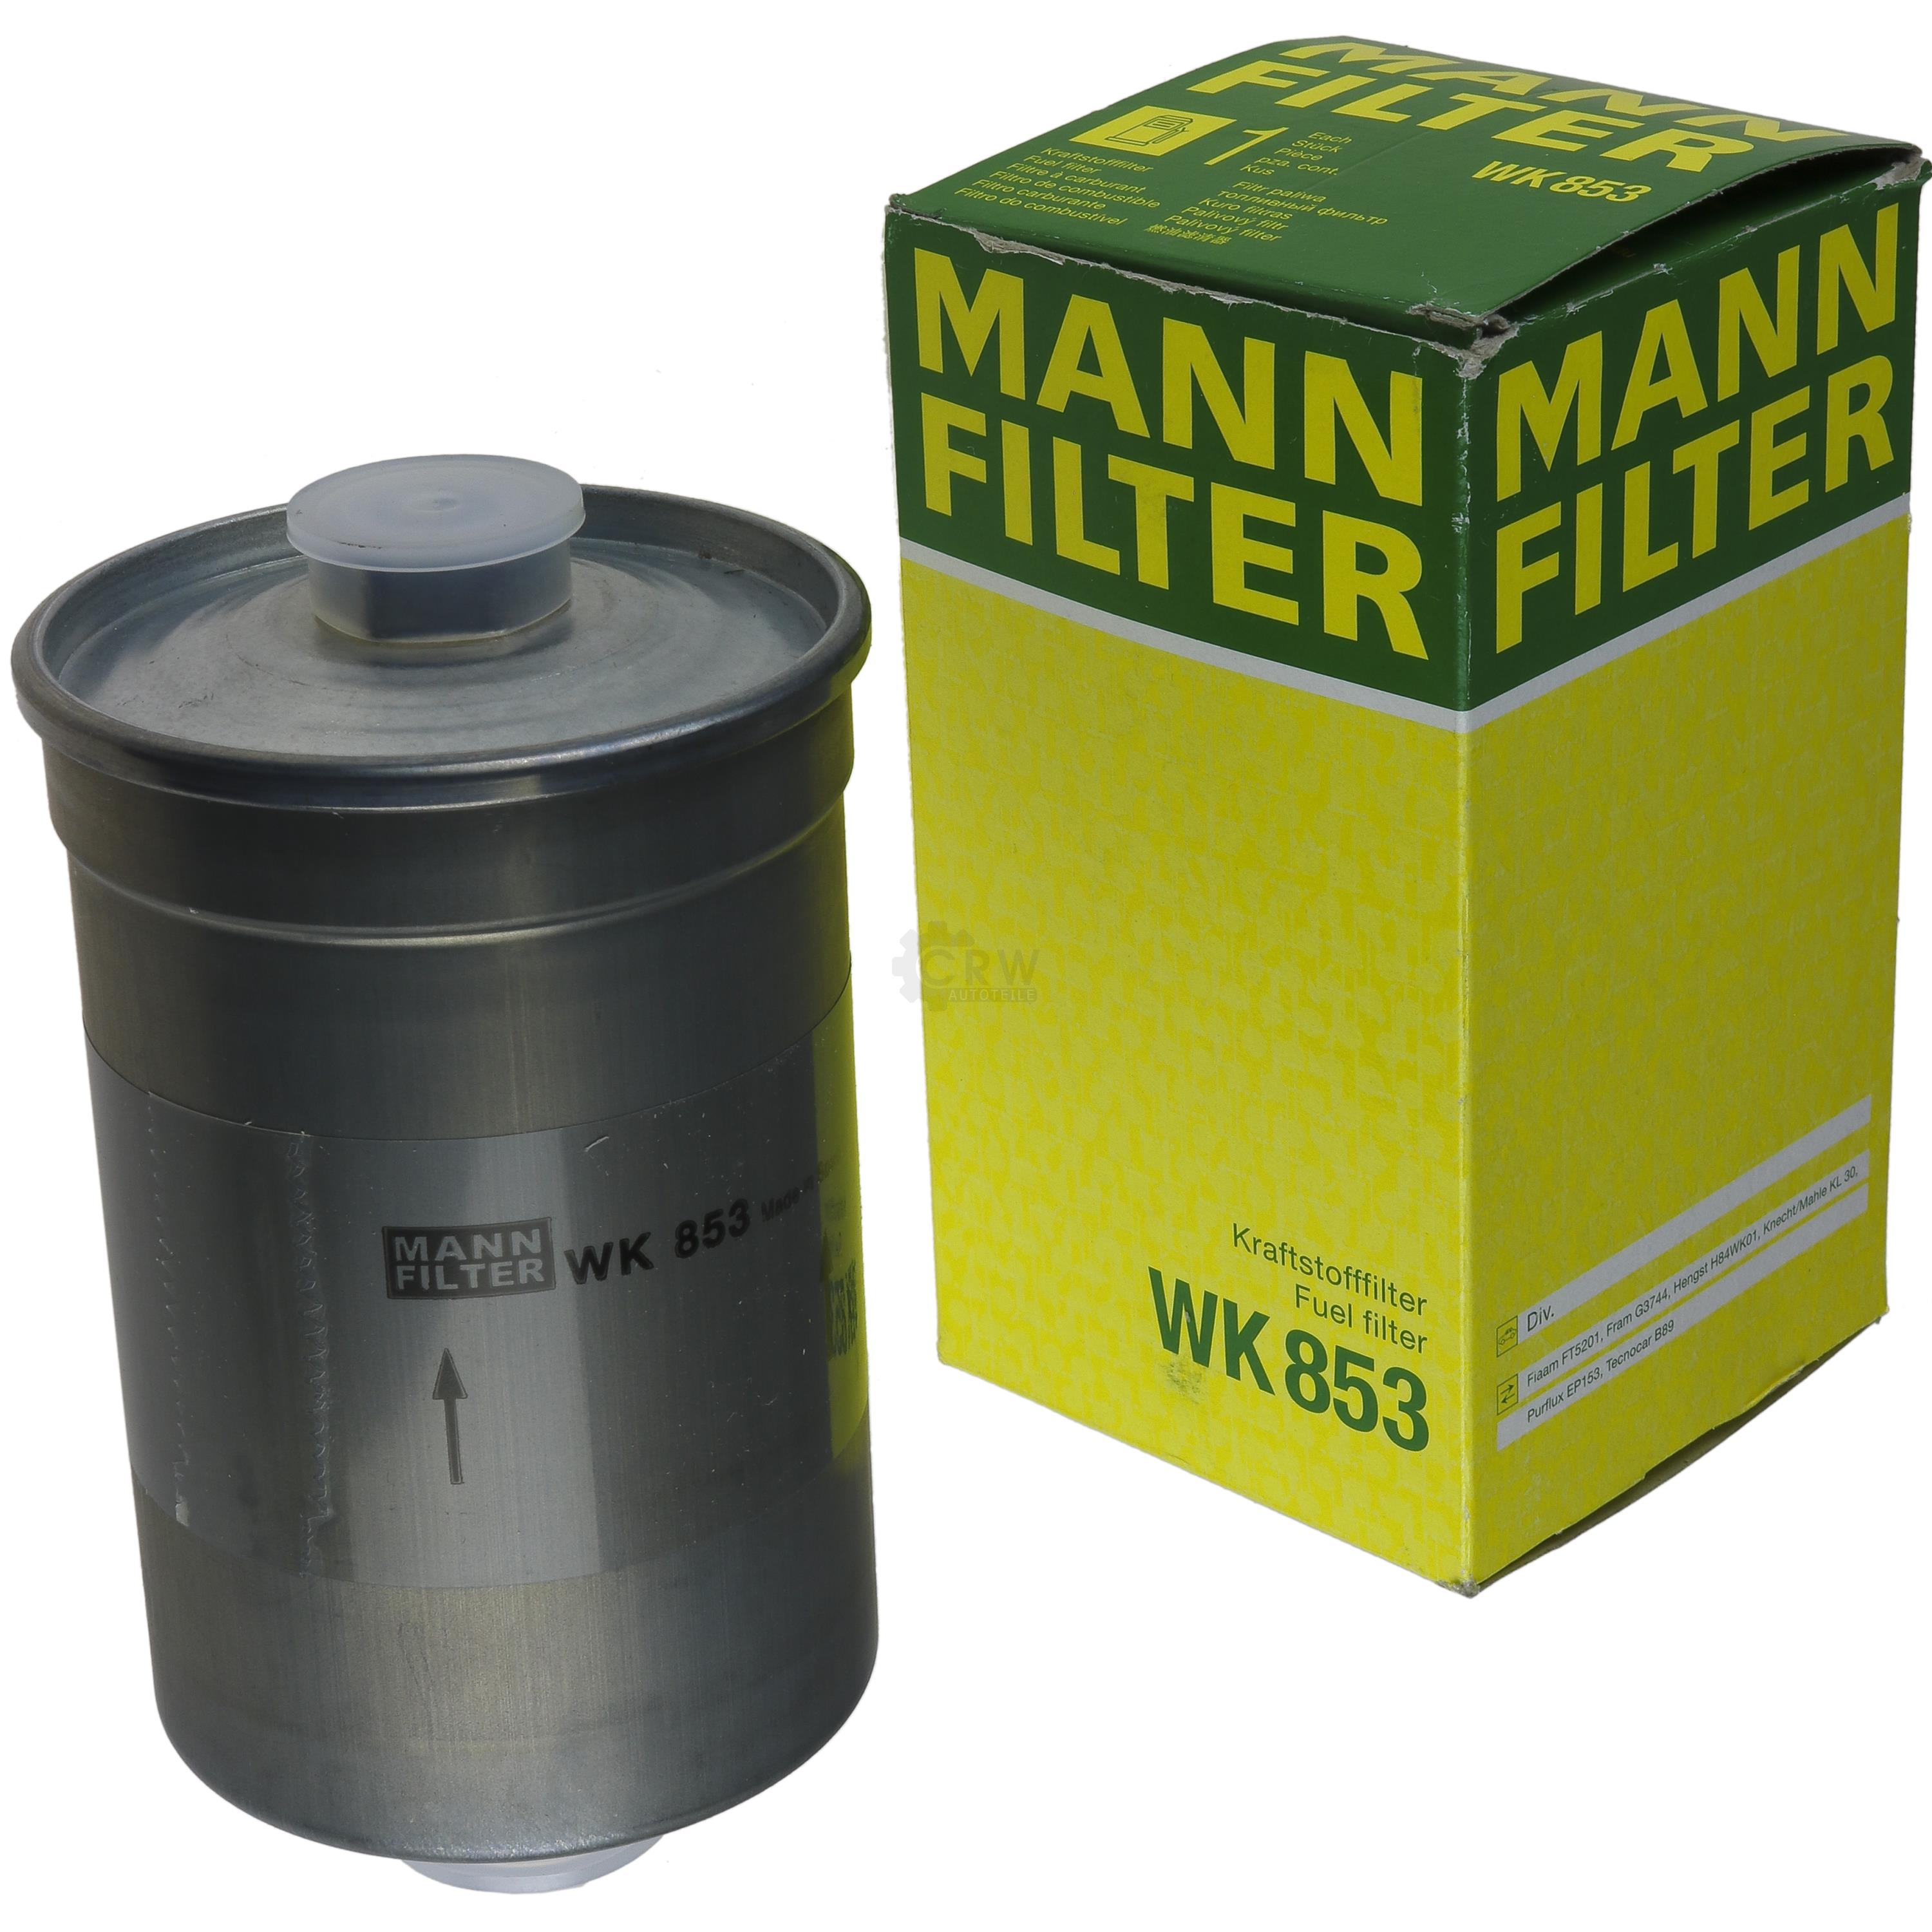 MANN-FILTER Kraftstofffilter WK 853 Fuel Filter